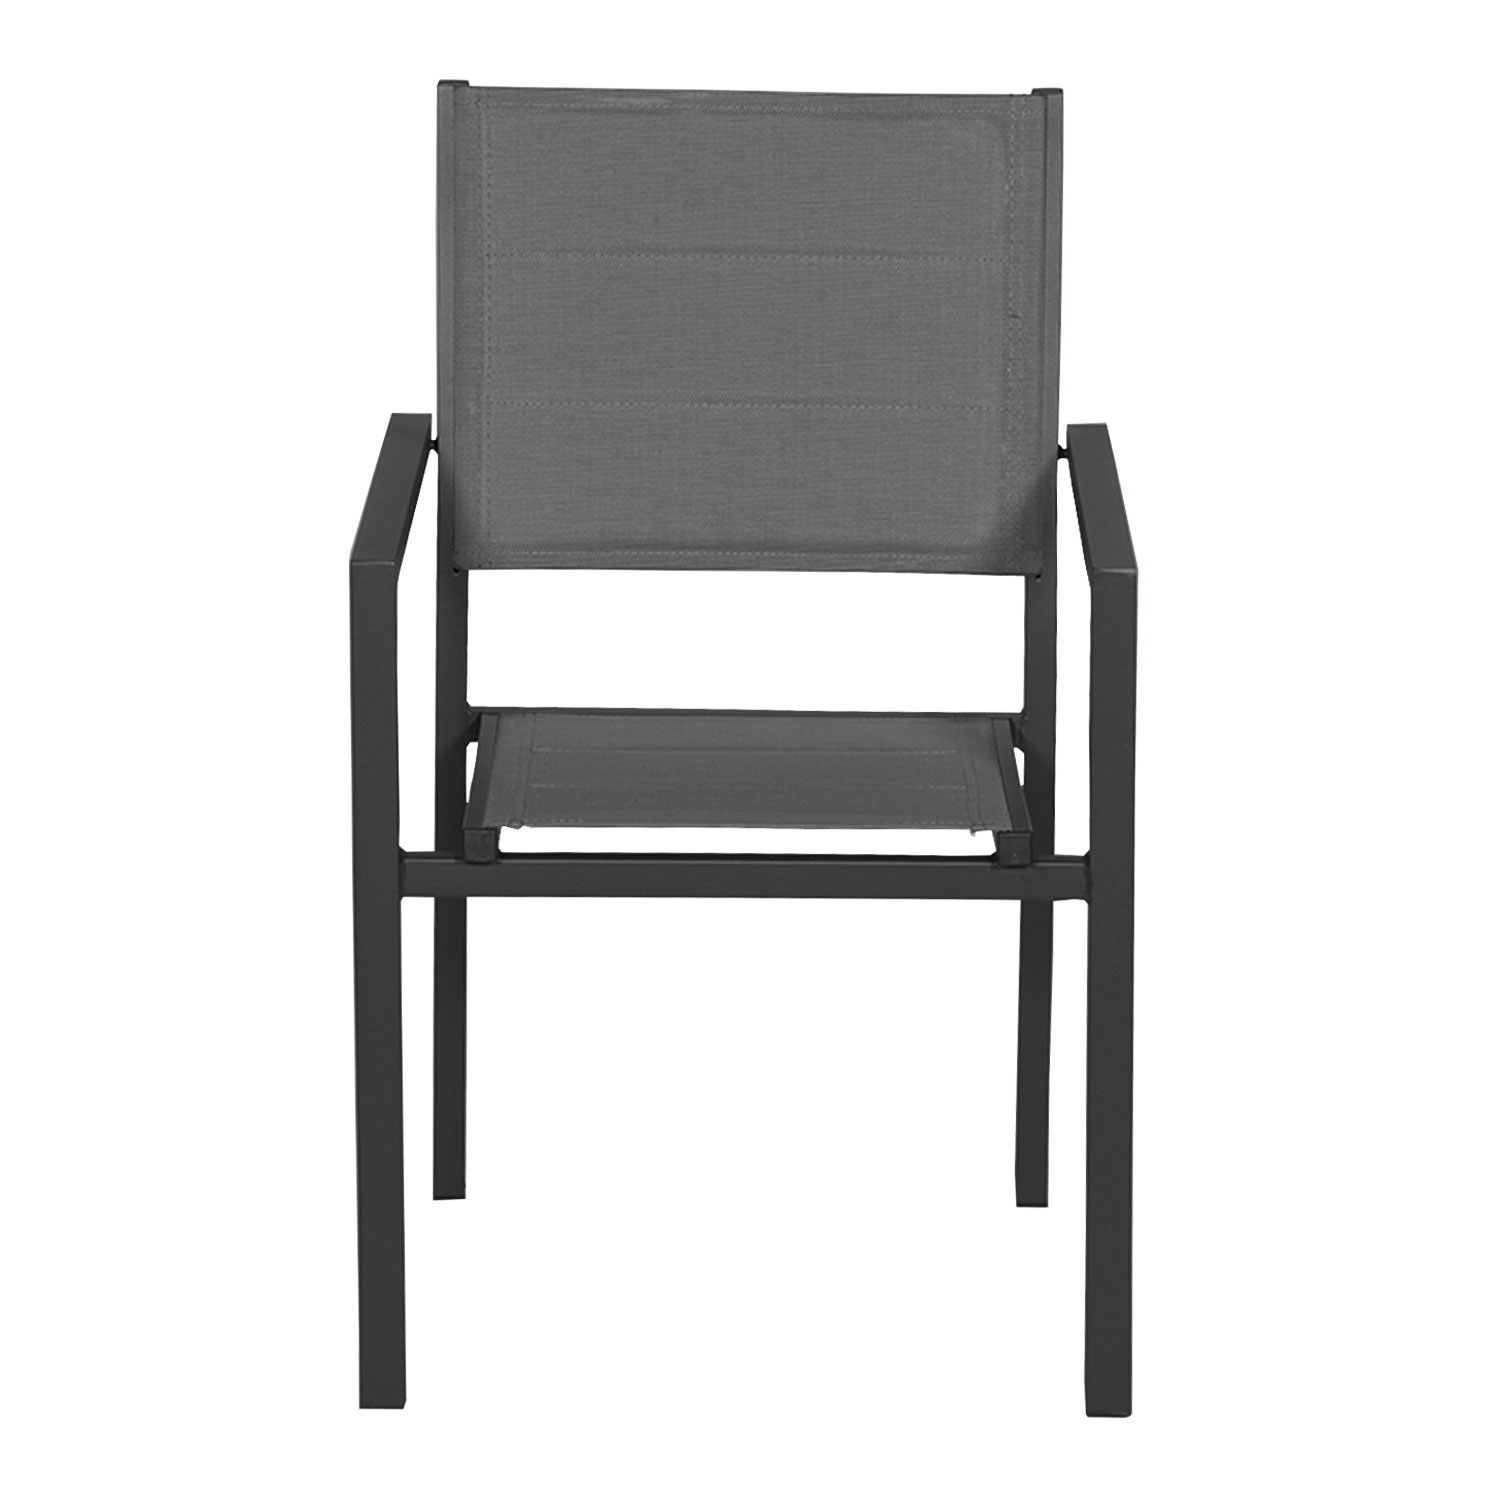 Satz von 8 gepolsterten Stühlen aus anthrazitfarbenem Aluminium - graues Textilene